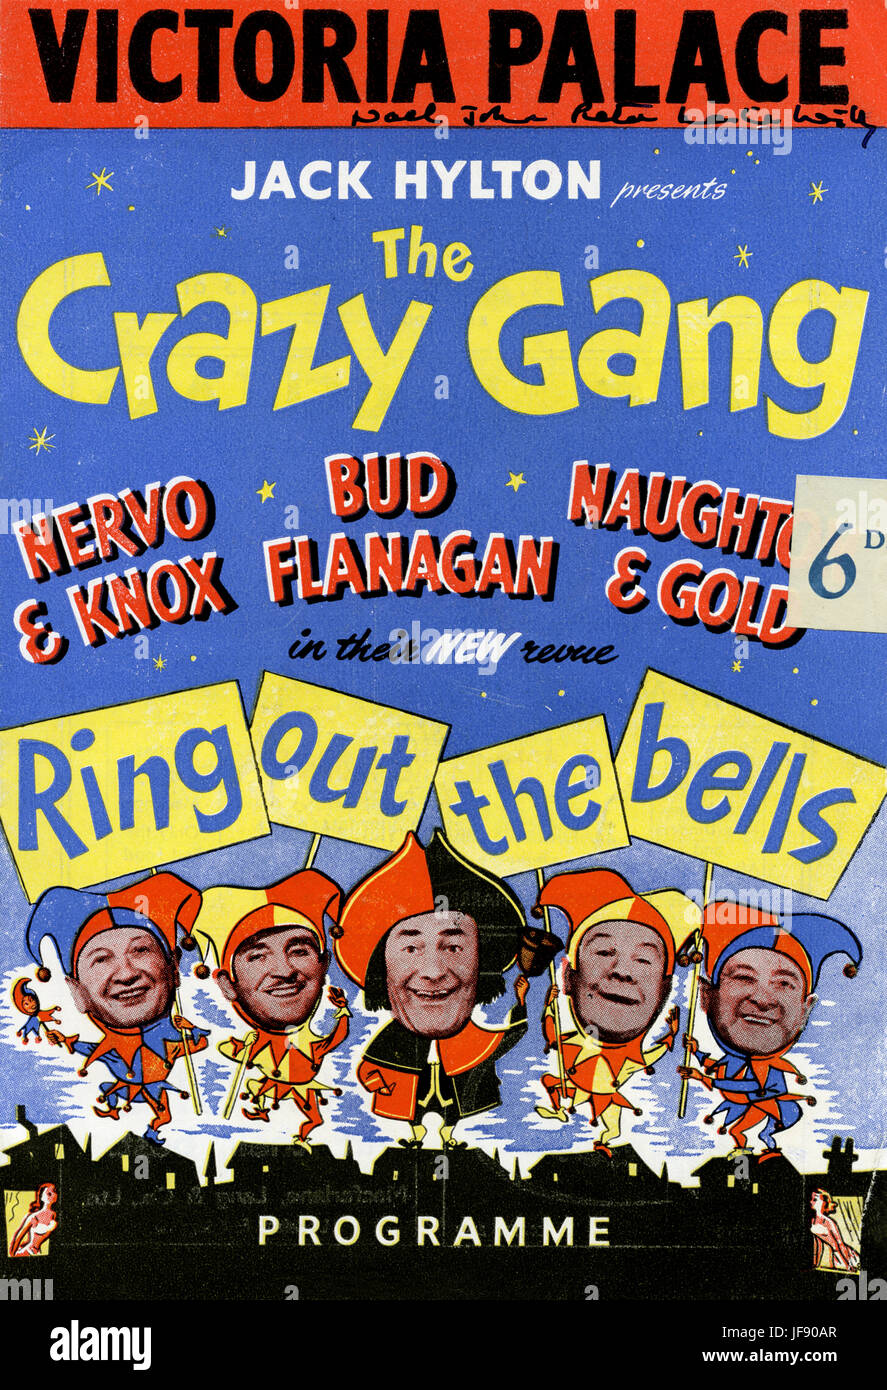 Crazy Gang. Il programma da Victoria Palace degli anni cinquanta. Nervo & Knox, Bud flanagan, Naughty & Gold vestito come jolly. Presentato da jack Hylton. Prezzo sei pence. Foto Stock